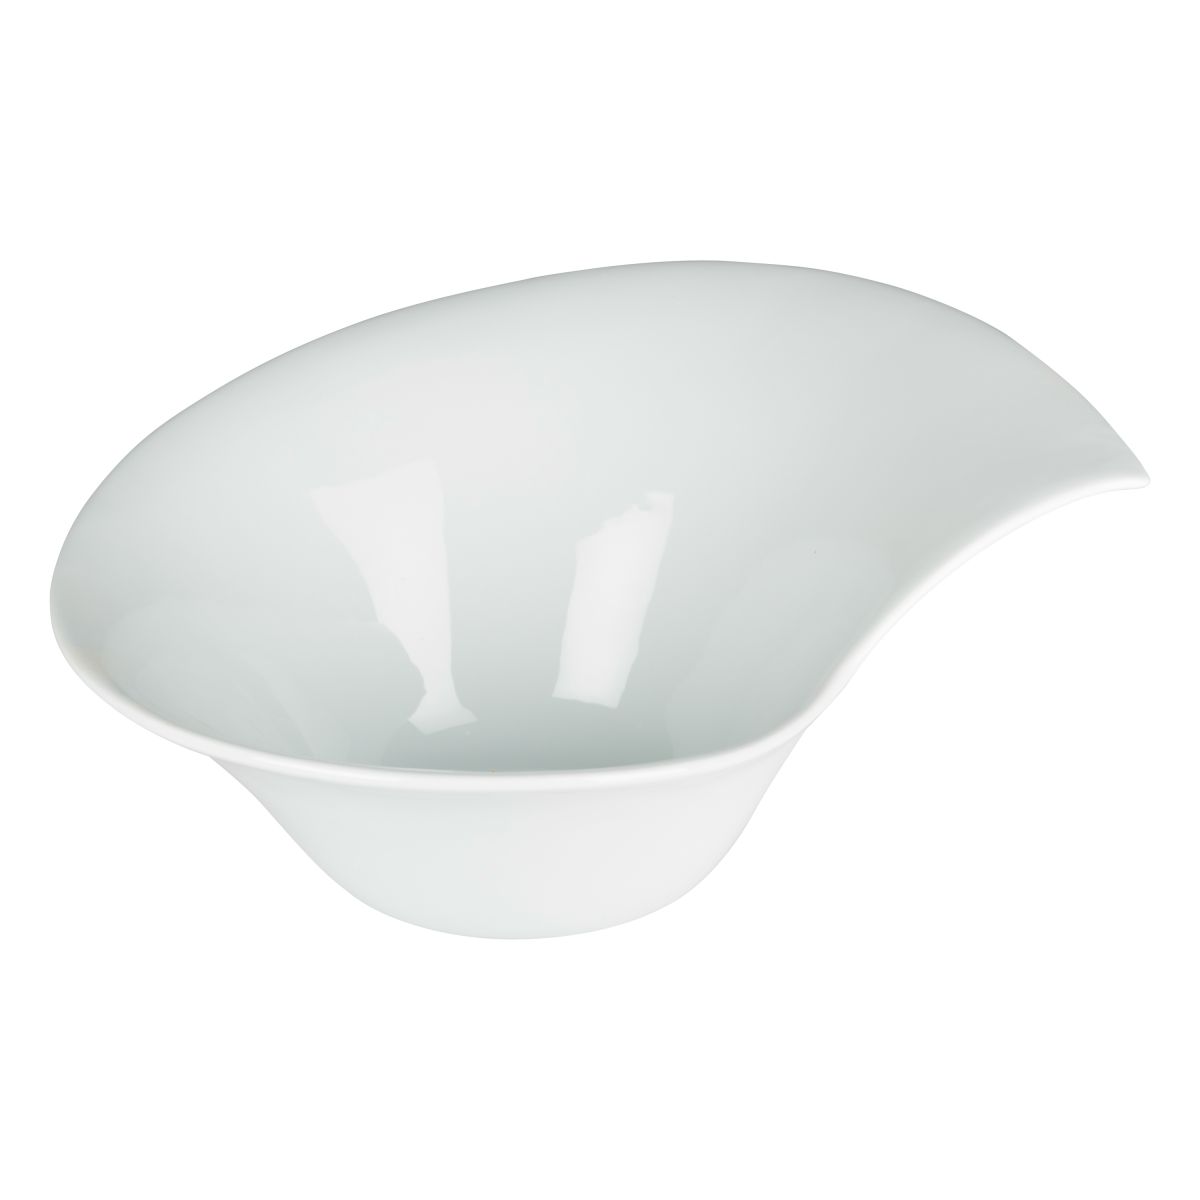 bowl porcelain grande 55x40x27cm